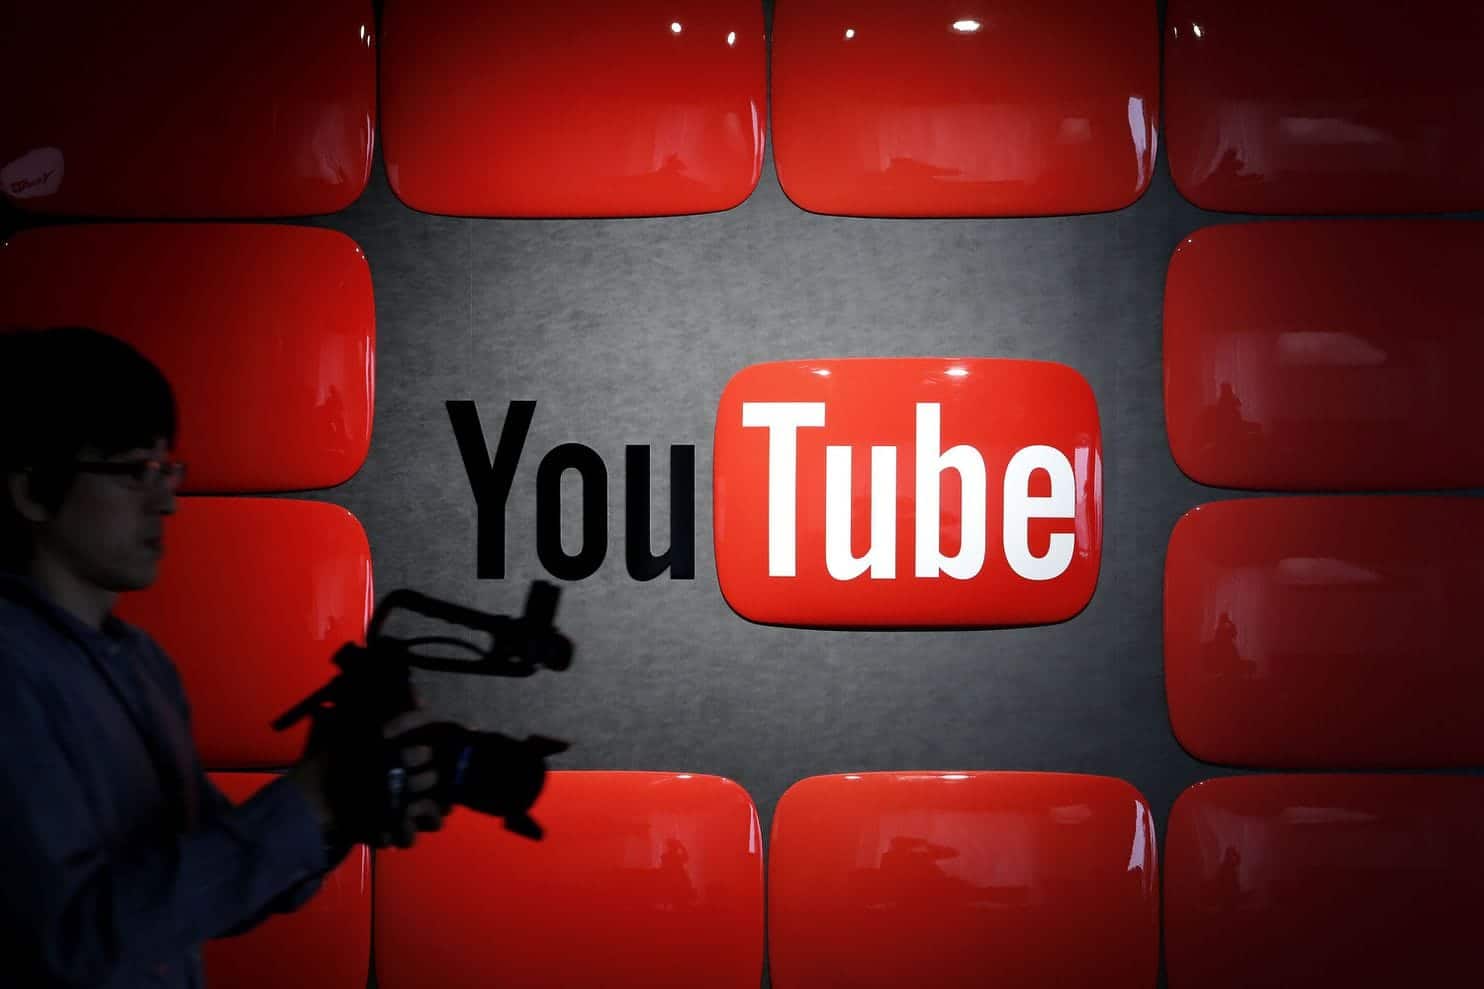 جوجل تتوصل إلى تسوية بشأن انتهاكات خصوصية الأطفال على يوتيوب